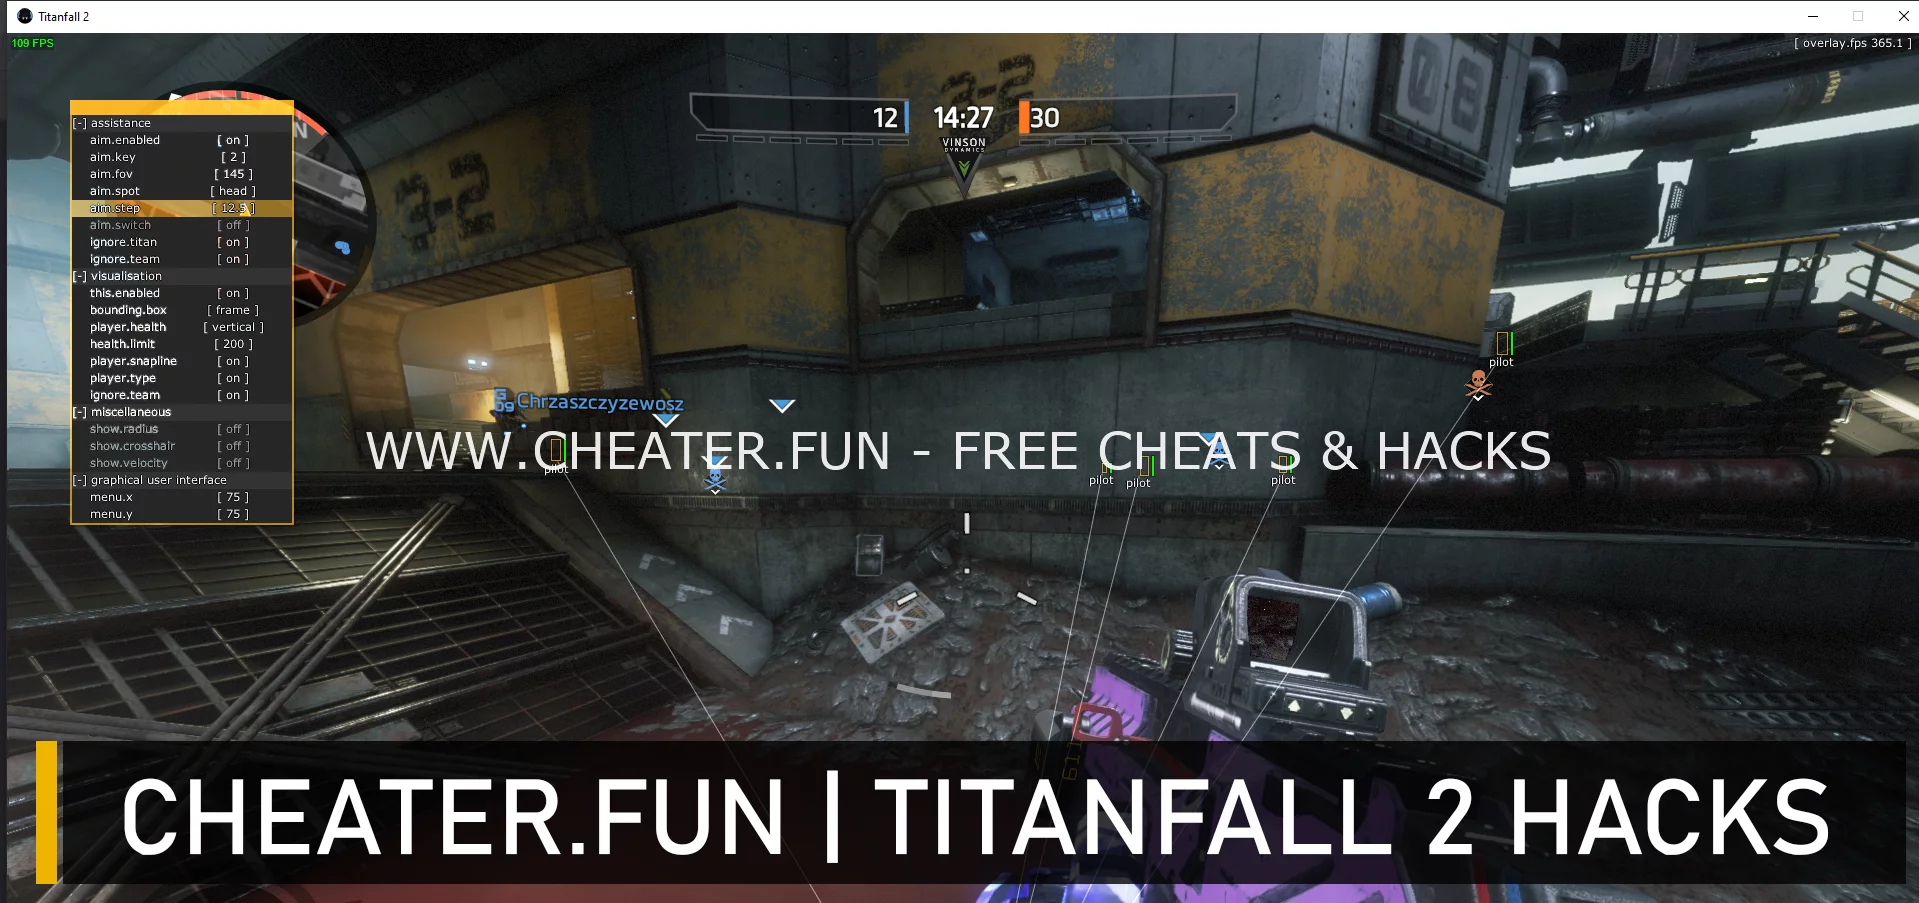 Titanfall 2 Steam External cheat